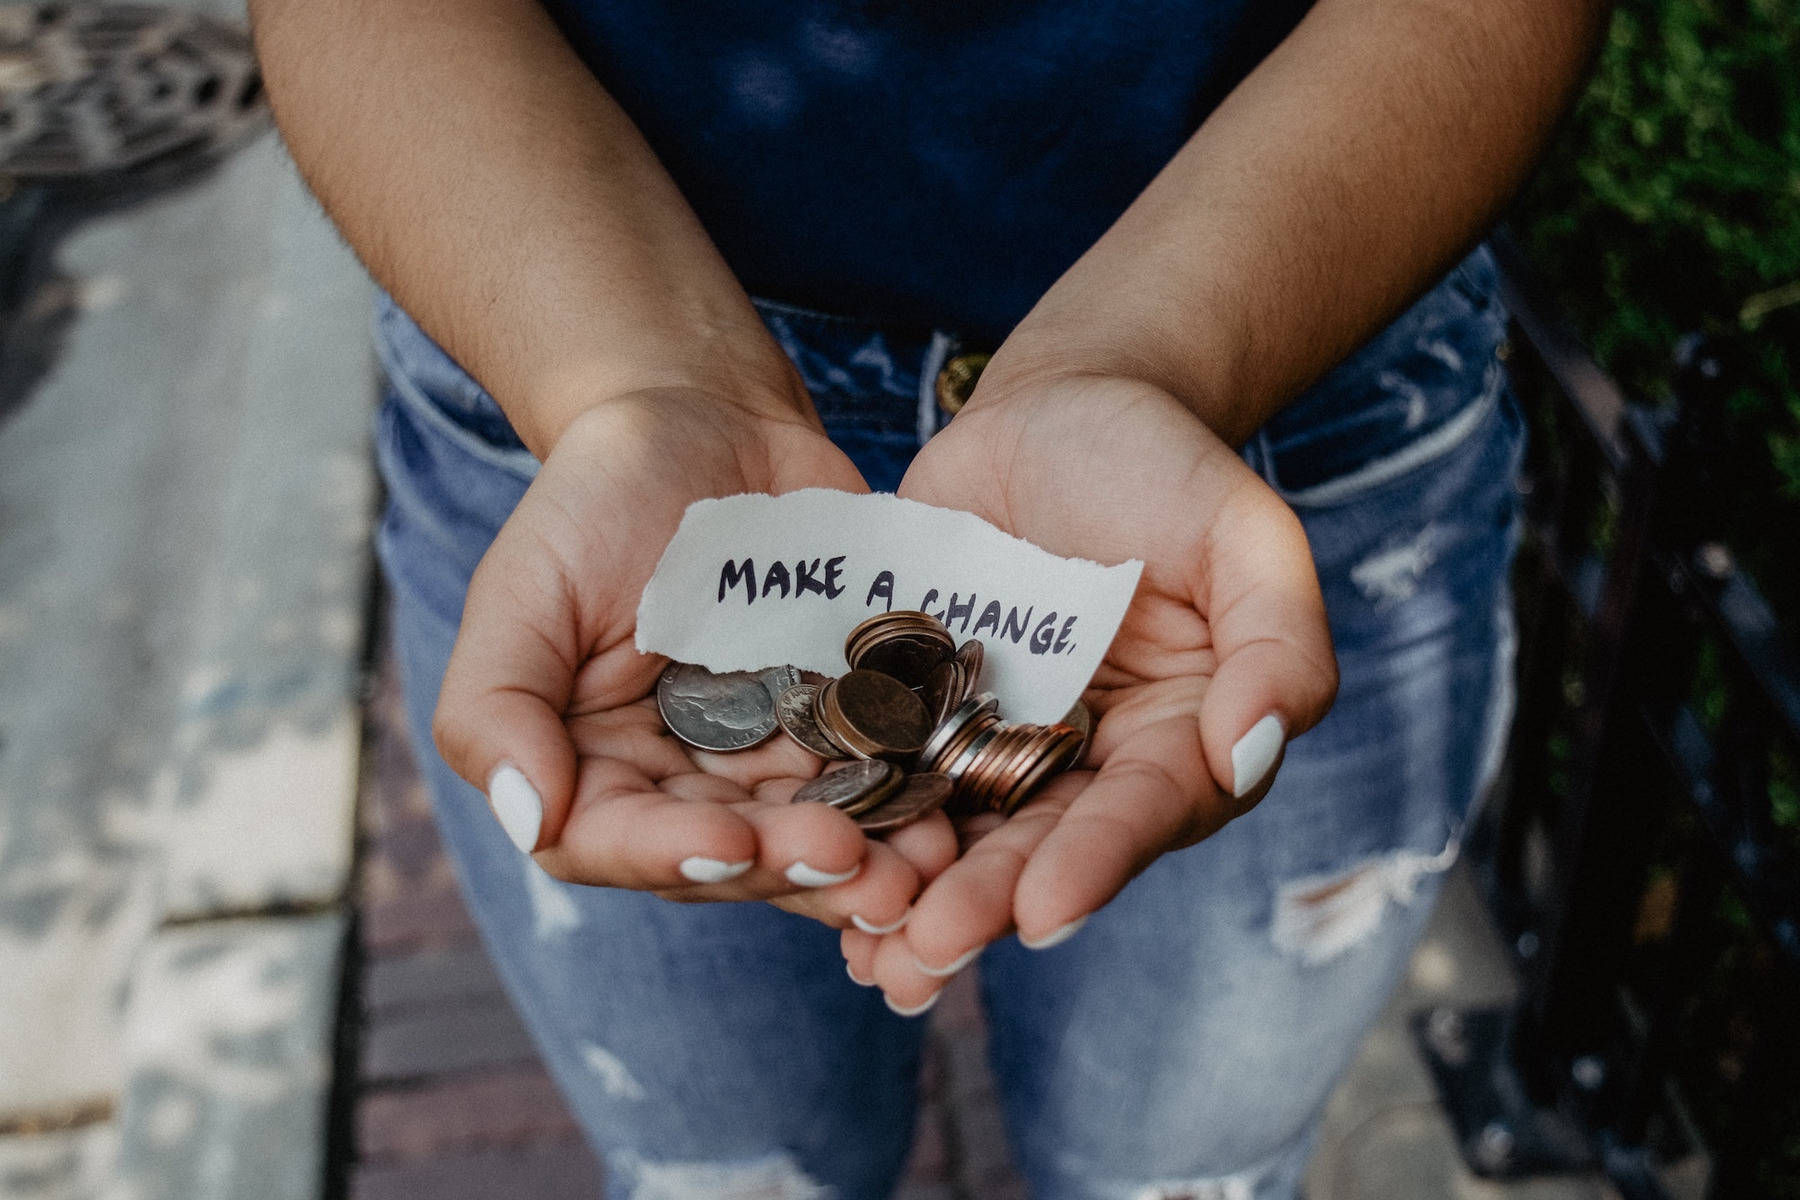 Eine Frau hält Münzen in den aufgebreiteten Händen und hält sie uns hin. In ihren Händen liegt auch ein Zettel auf dem steht: "Make a change."